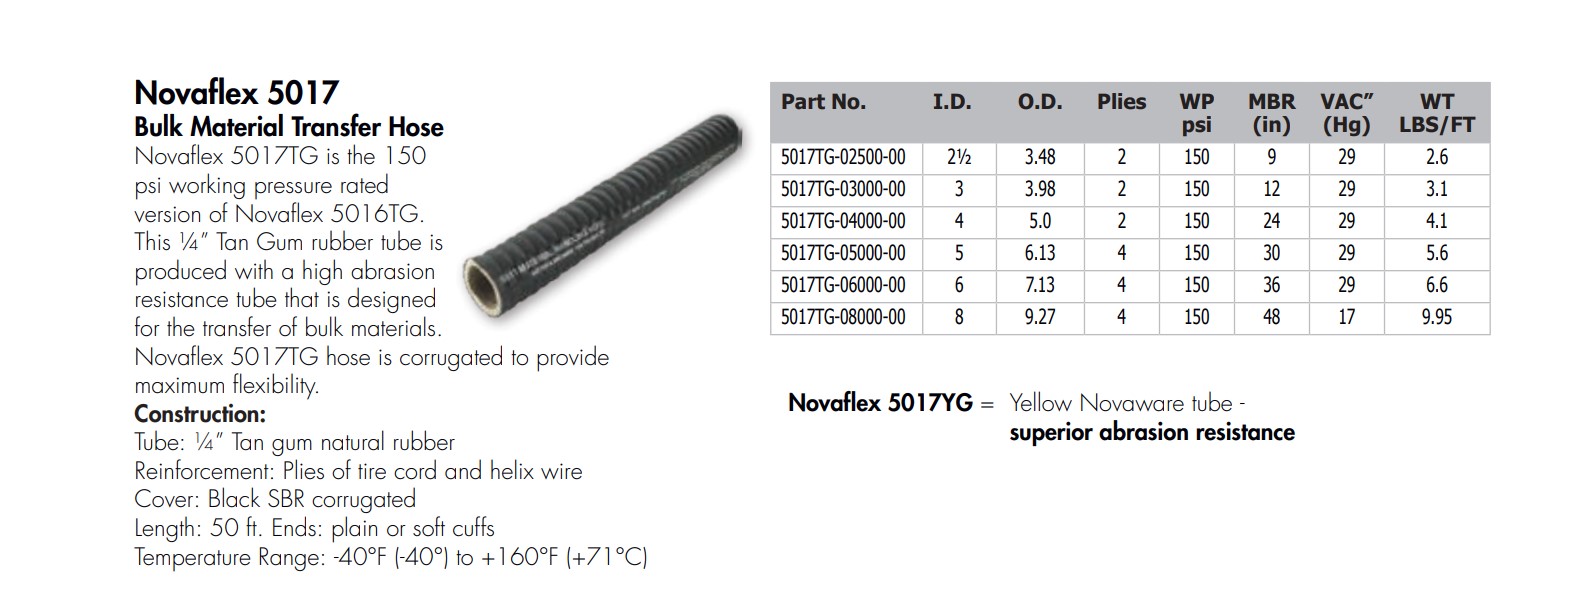 novaflex 5017 bulk material transfer hose